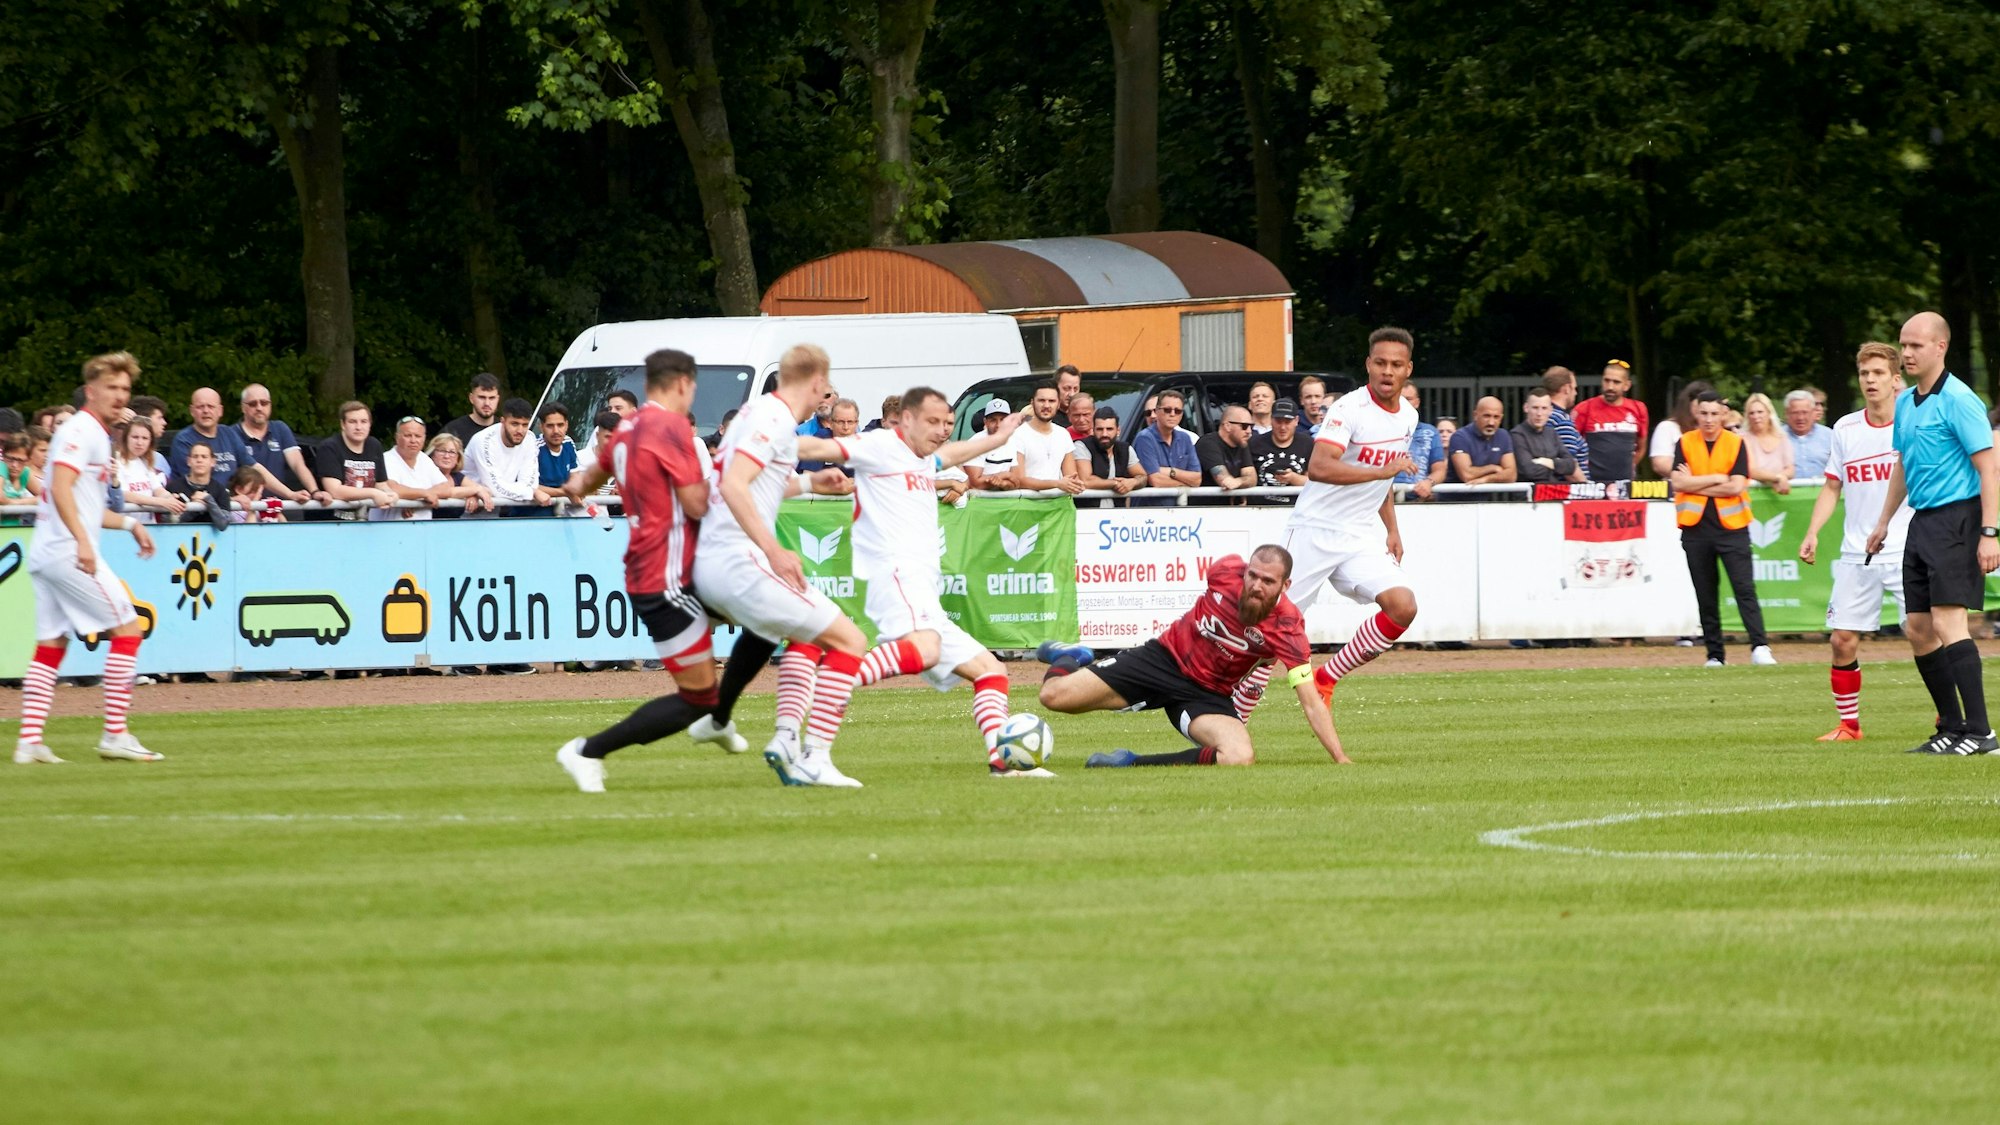 Mehrere Fußballspieler konkurrieren während eines Spiels auf einem Rasenplatz um den Ball.